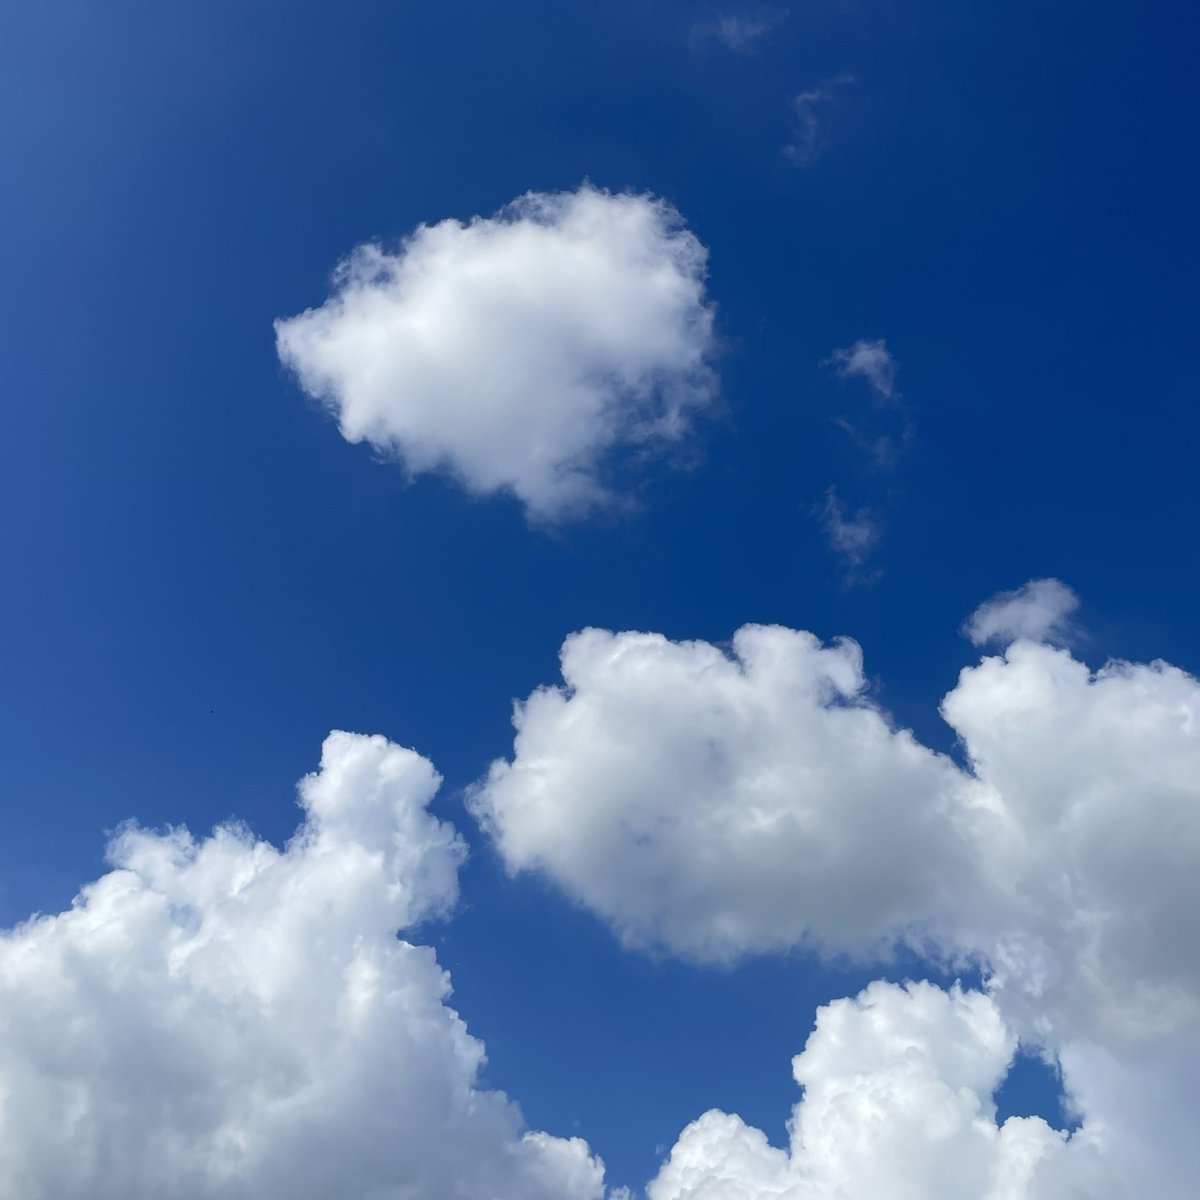 가을하늘?!!!

미세먼지 1도 없는 파랗고 높은 하늘에 몽글몽글 귀여운 구름 둥실... 너무나 예쁜 하늘~

#iweb3 #wormhole30G #pnut #steem #kr #krsuccess #actnearn #aaa